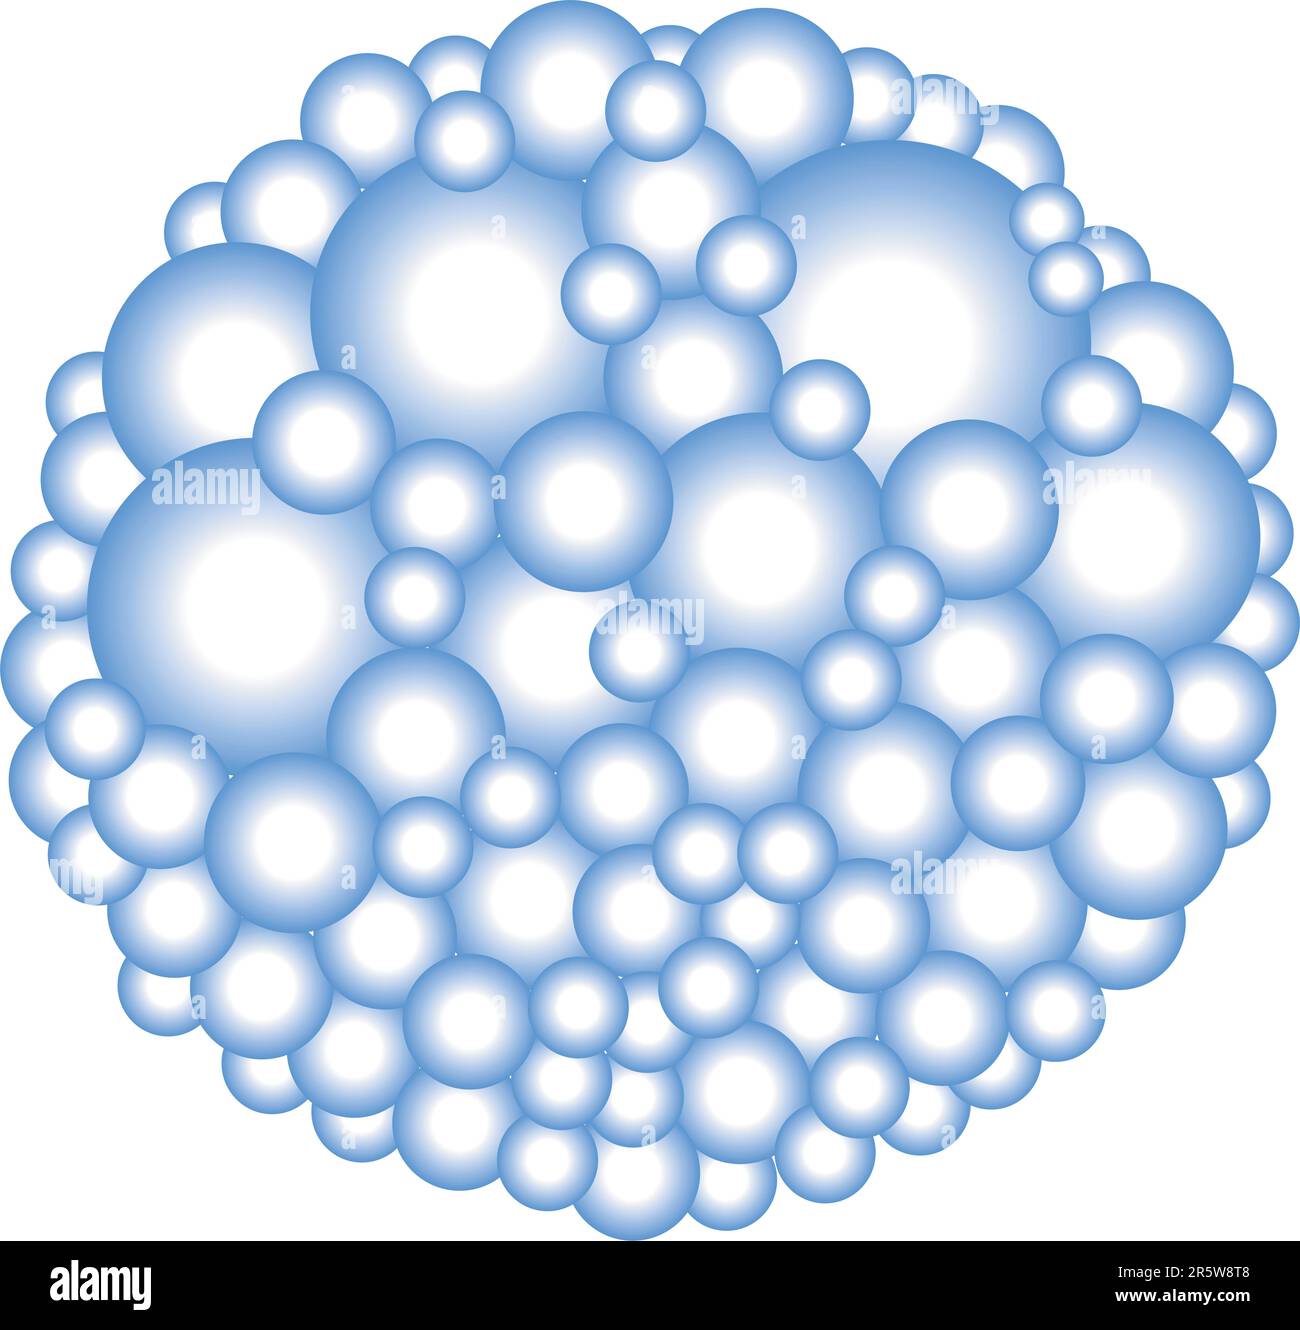 Bearbeitbare Vektordarstellung von Blasen mit jeder Blase als separates bewegliches Objekt Stock Vektor